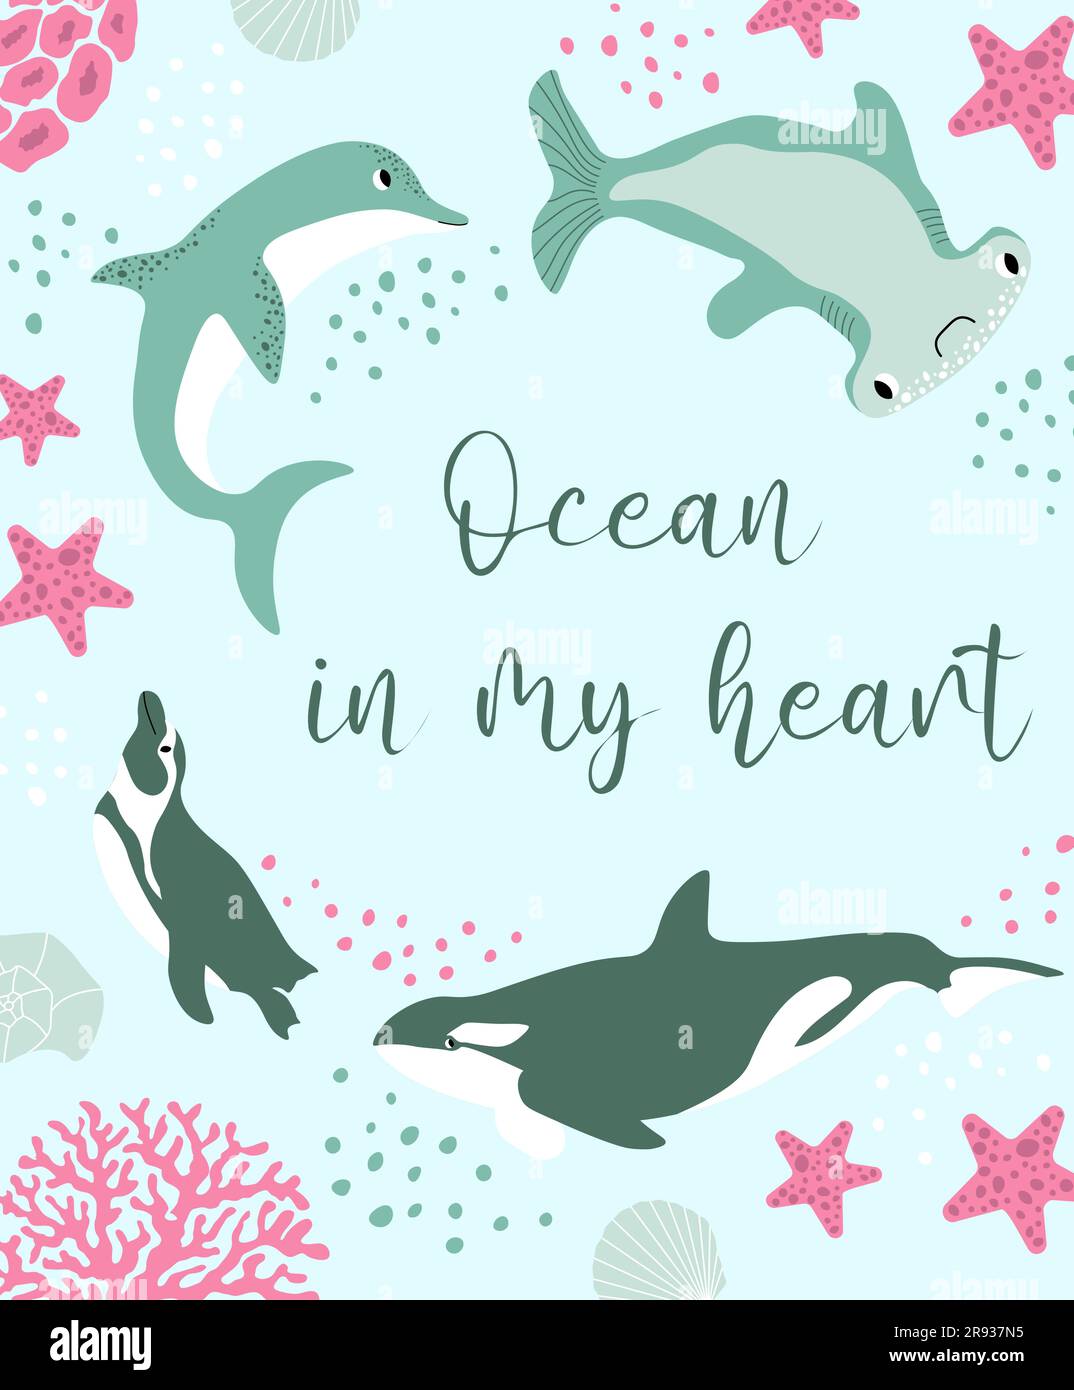 Vektor Ozean Illustration mit Pinguin, Delfin, Killerwal, Hammerhaie Fische, Korallen. Ozean in meinem Herzen - moderne Schrift. Unterwassertiere. Ökologie Stock Vektor